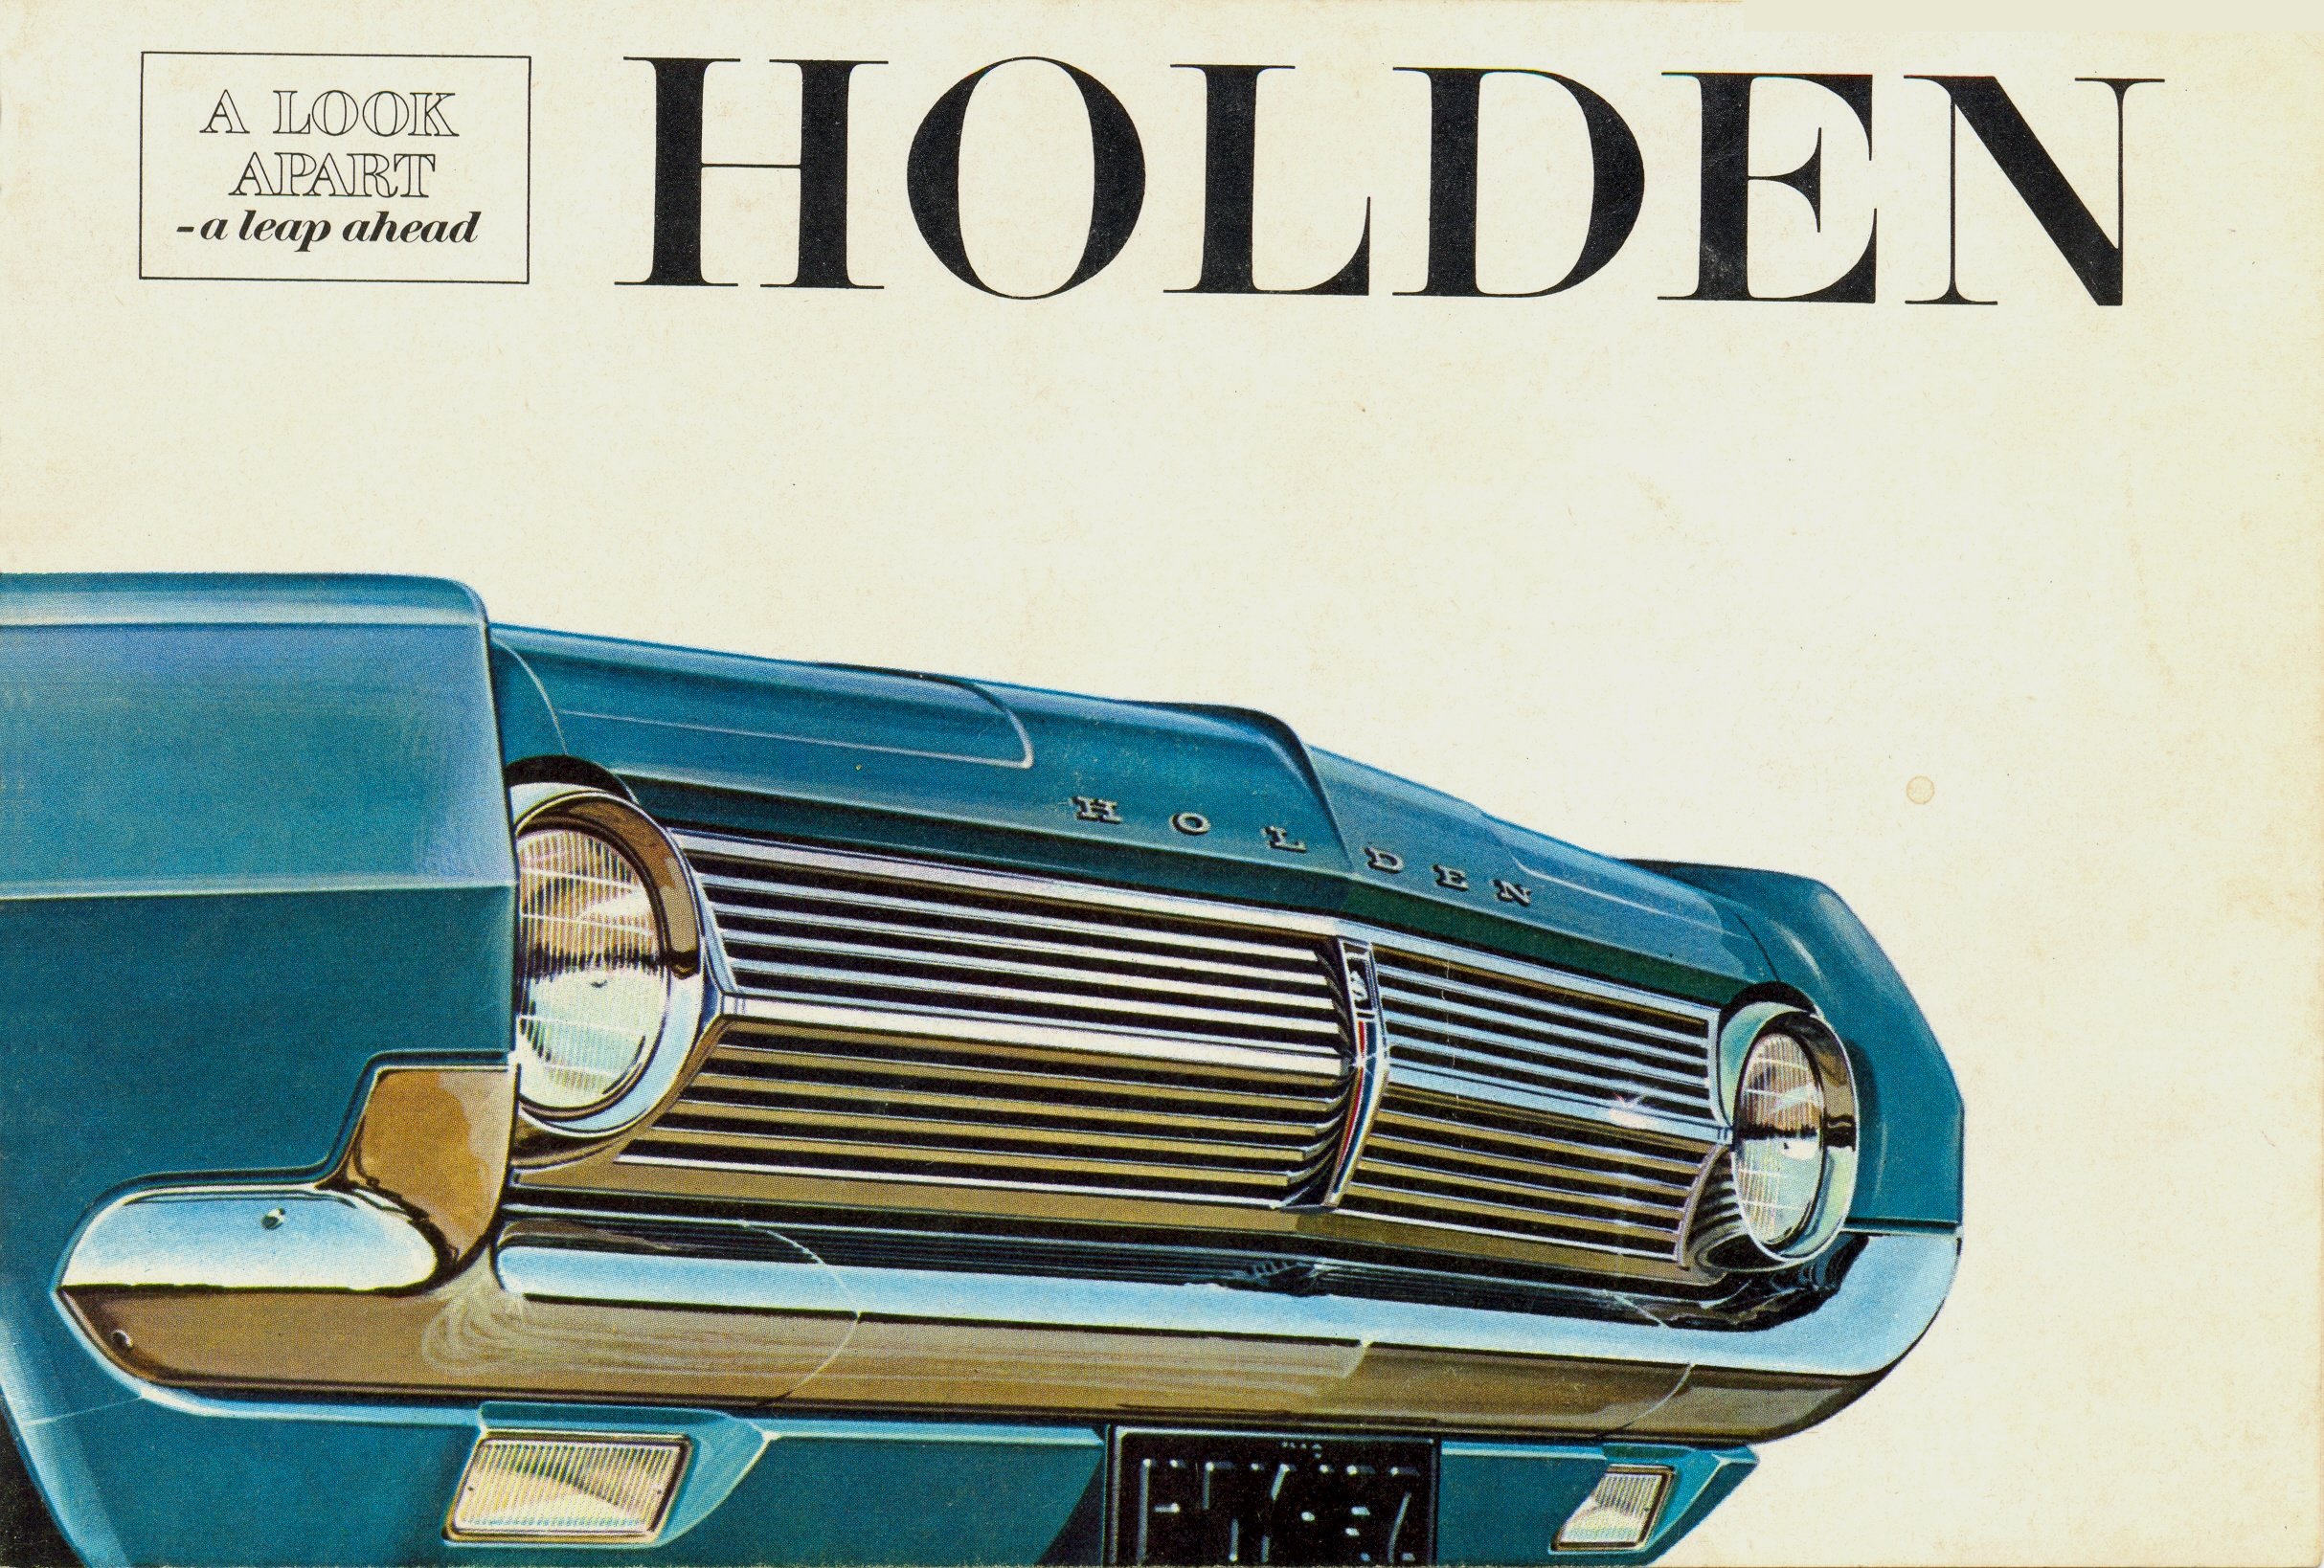 1965_Holden-01